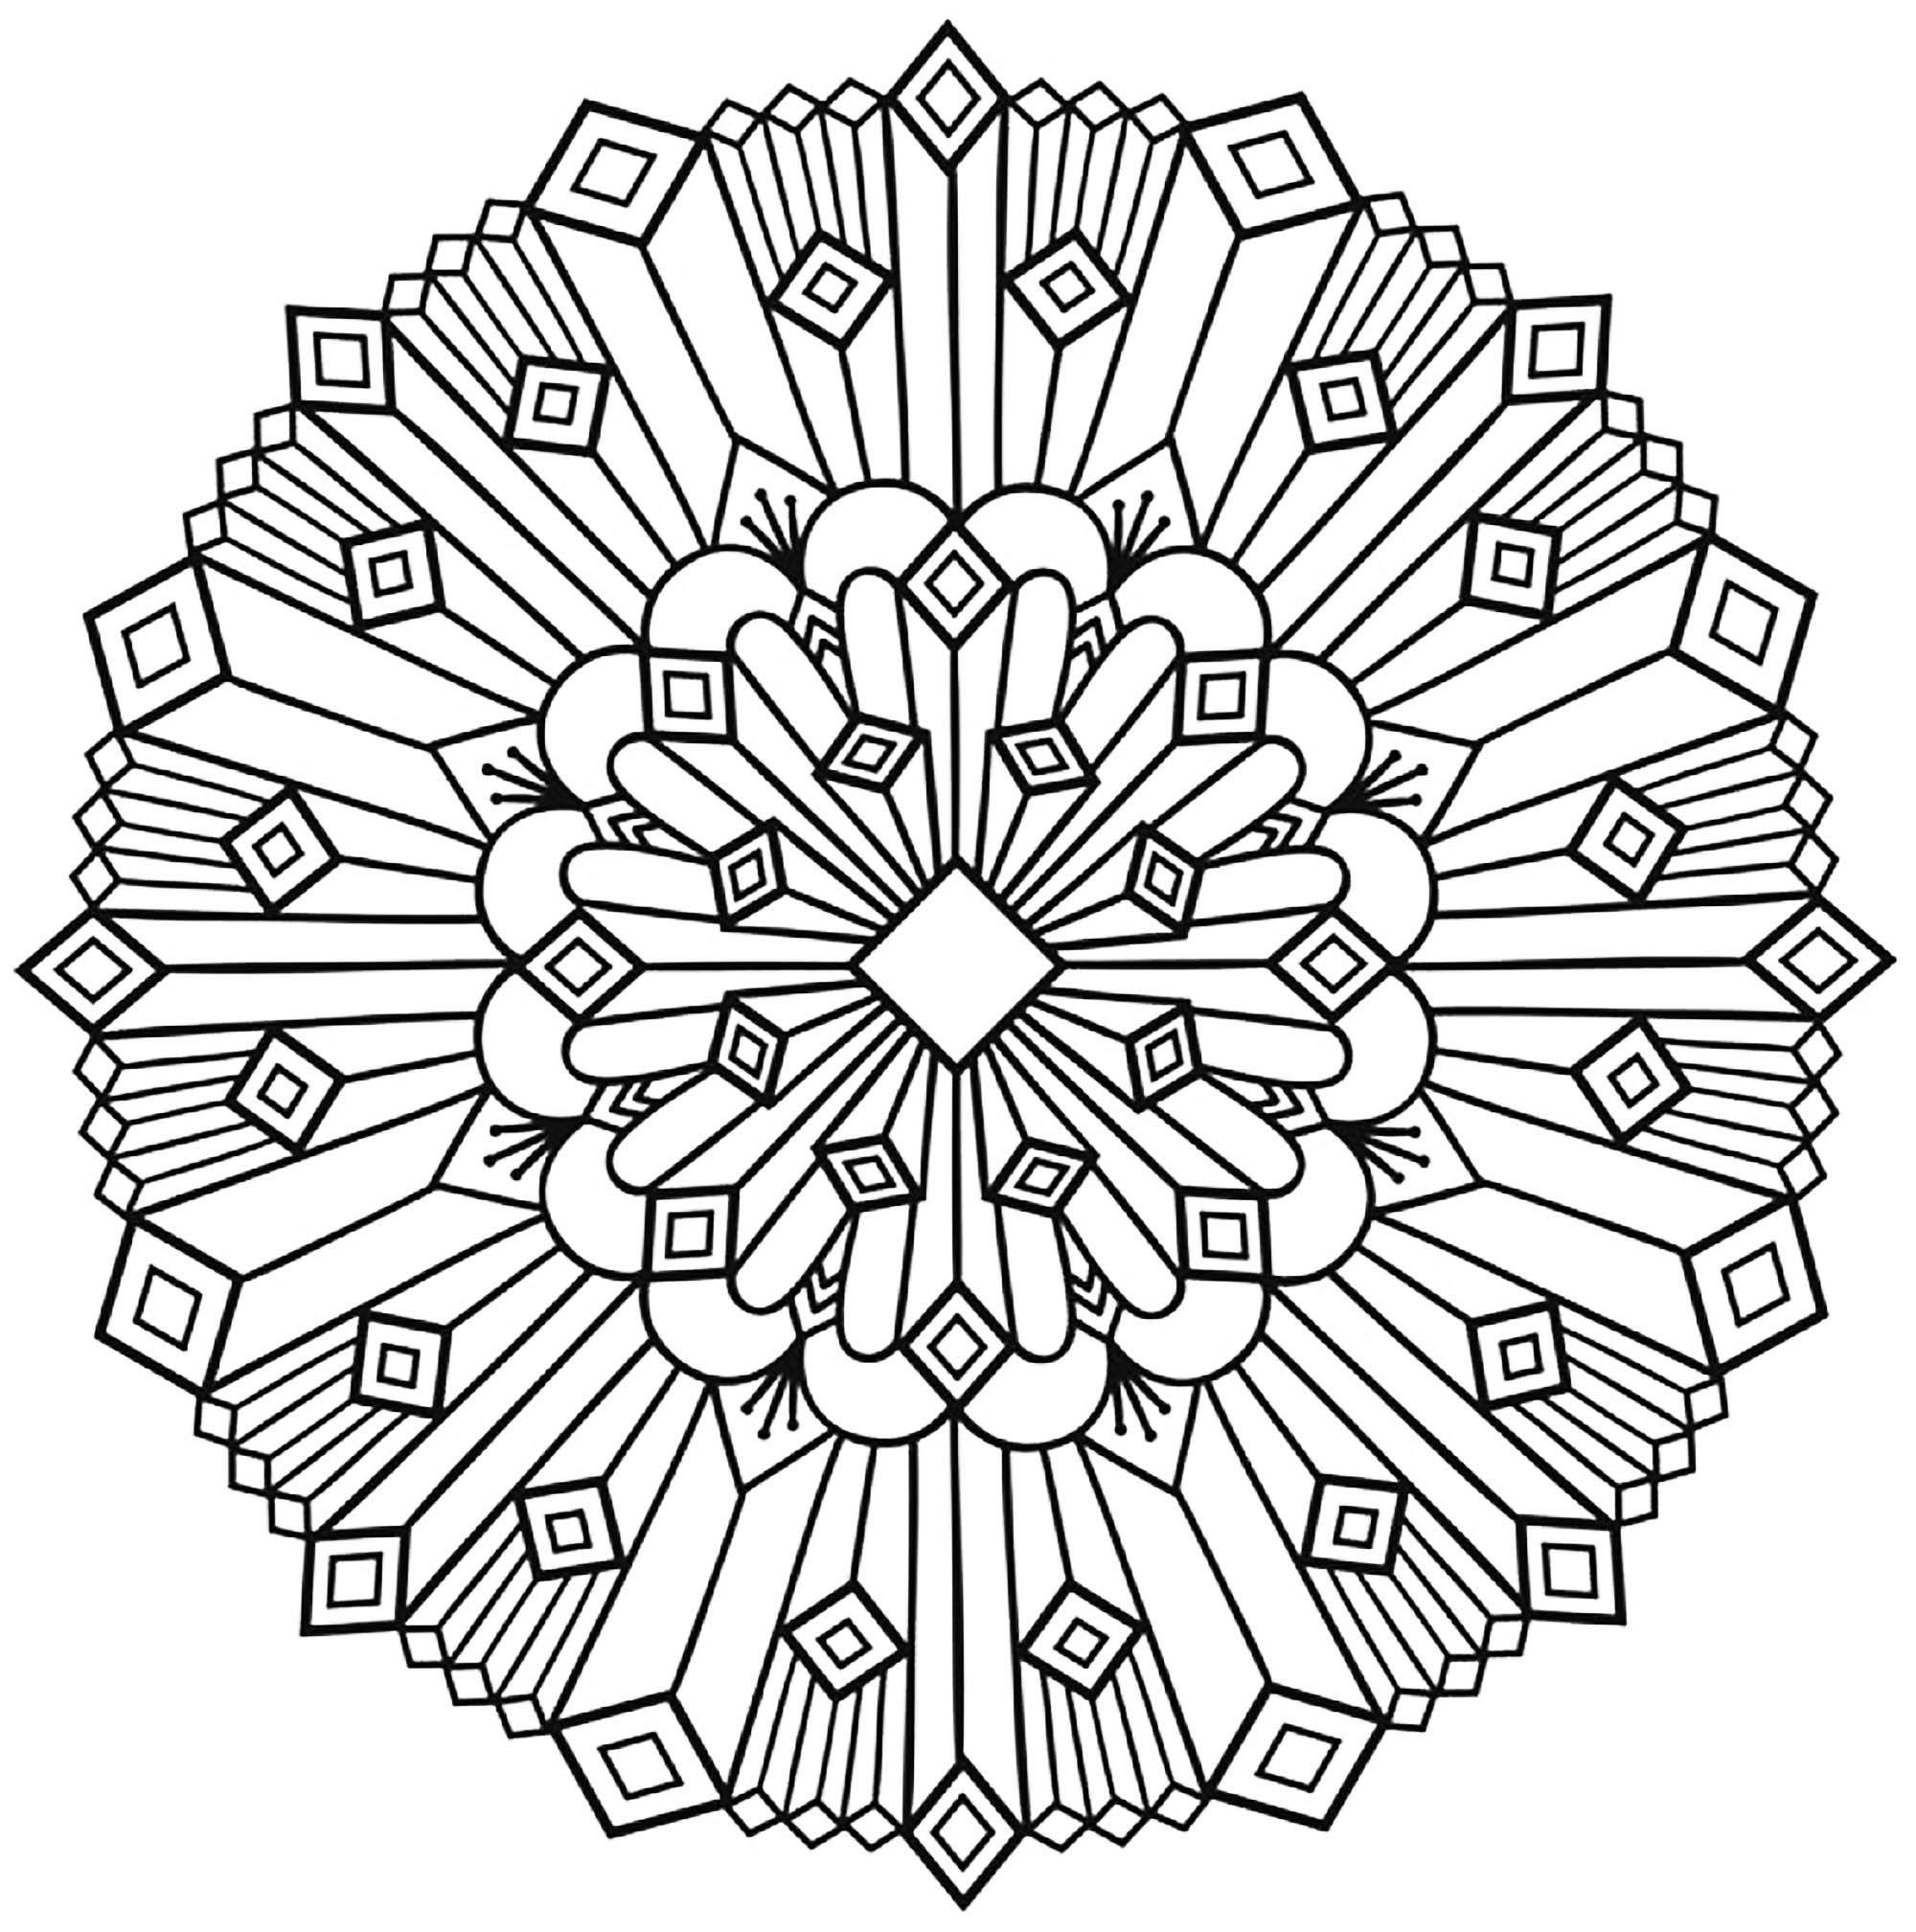 Mandala art deco simple - M&alas Adult Coloring Pages